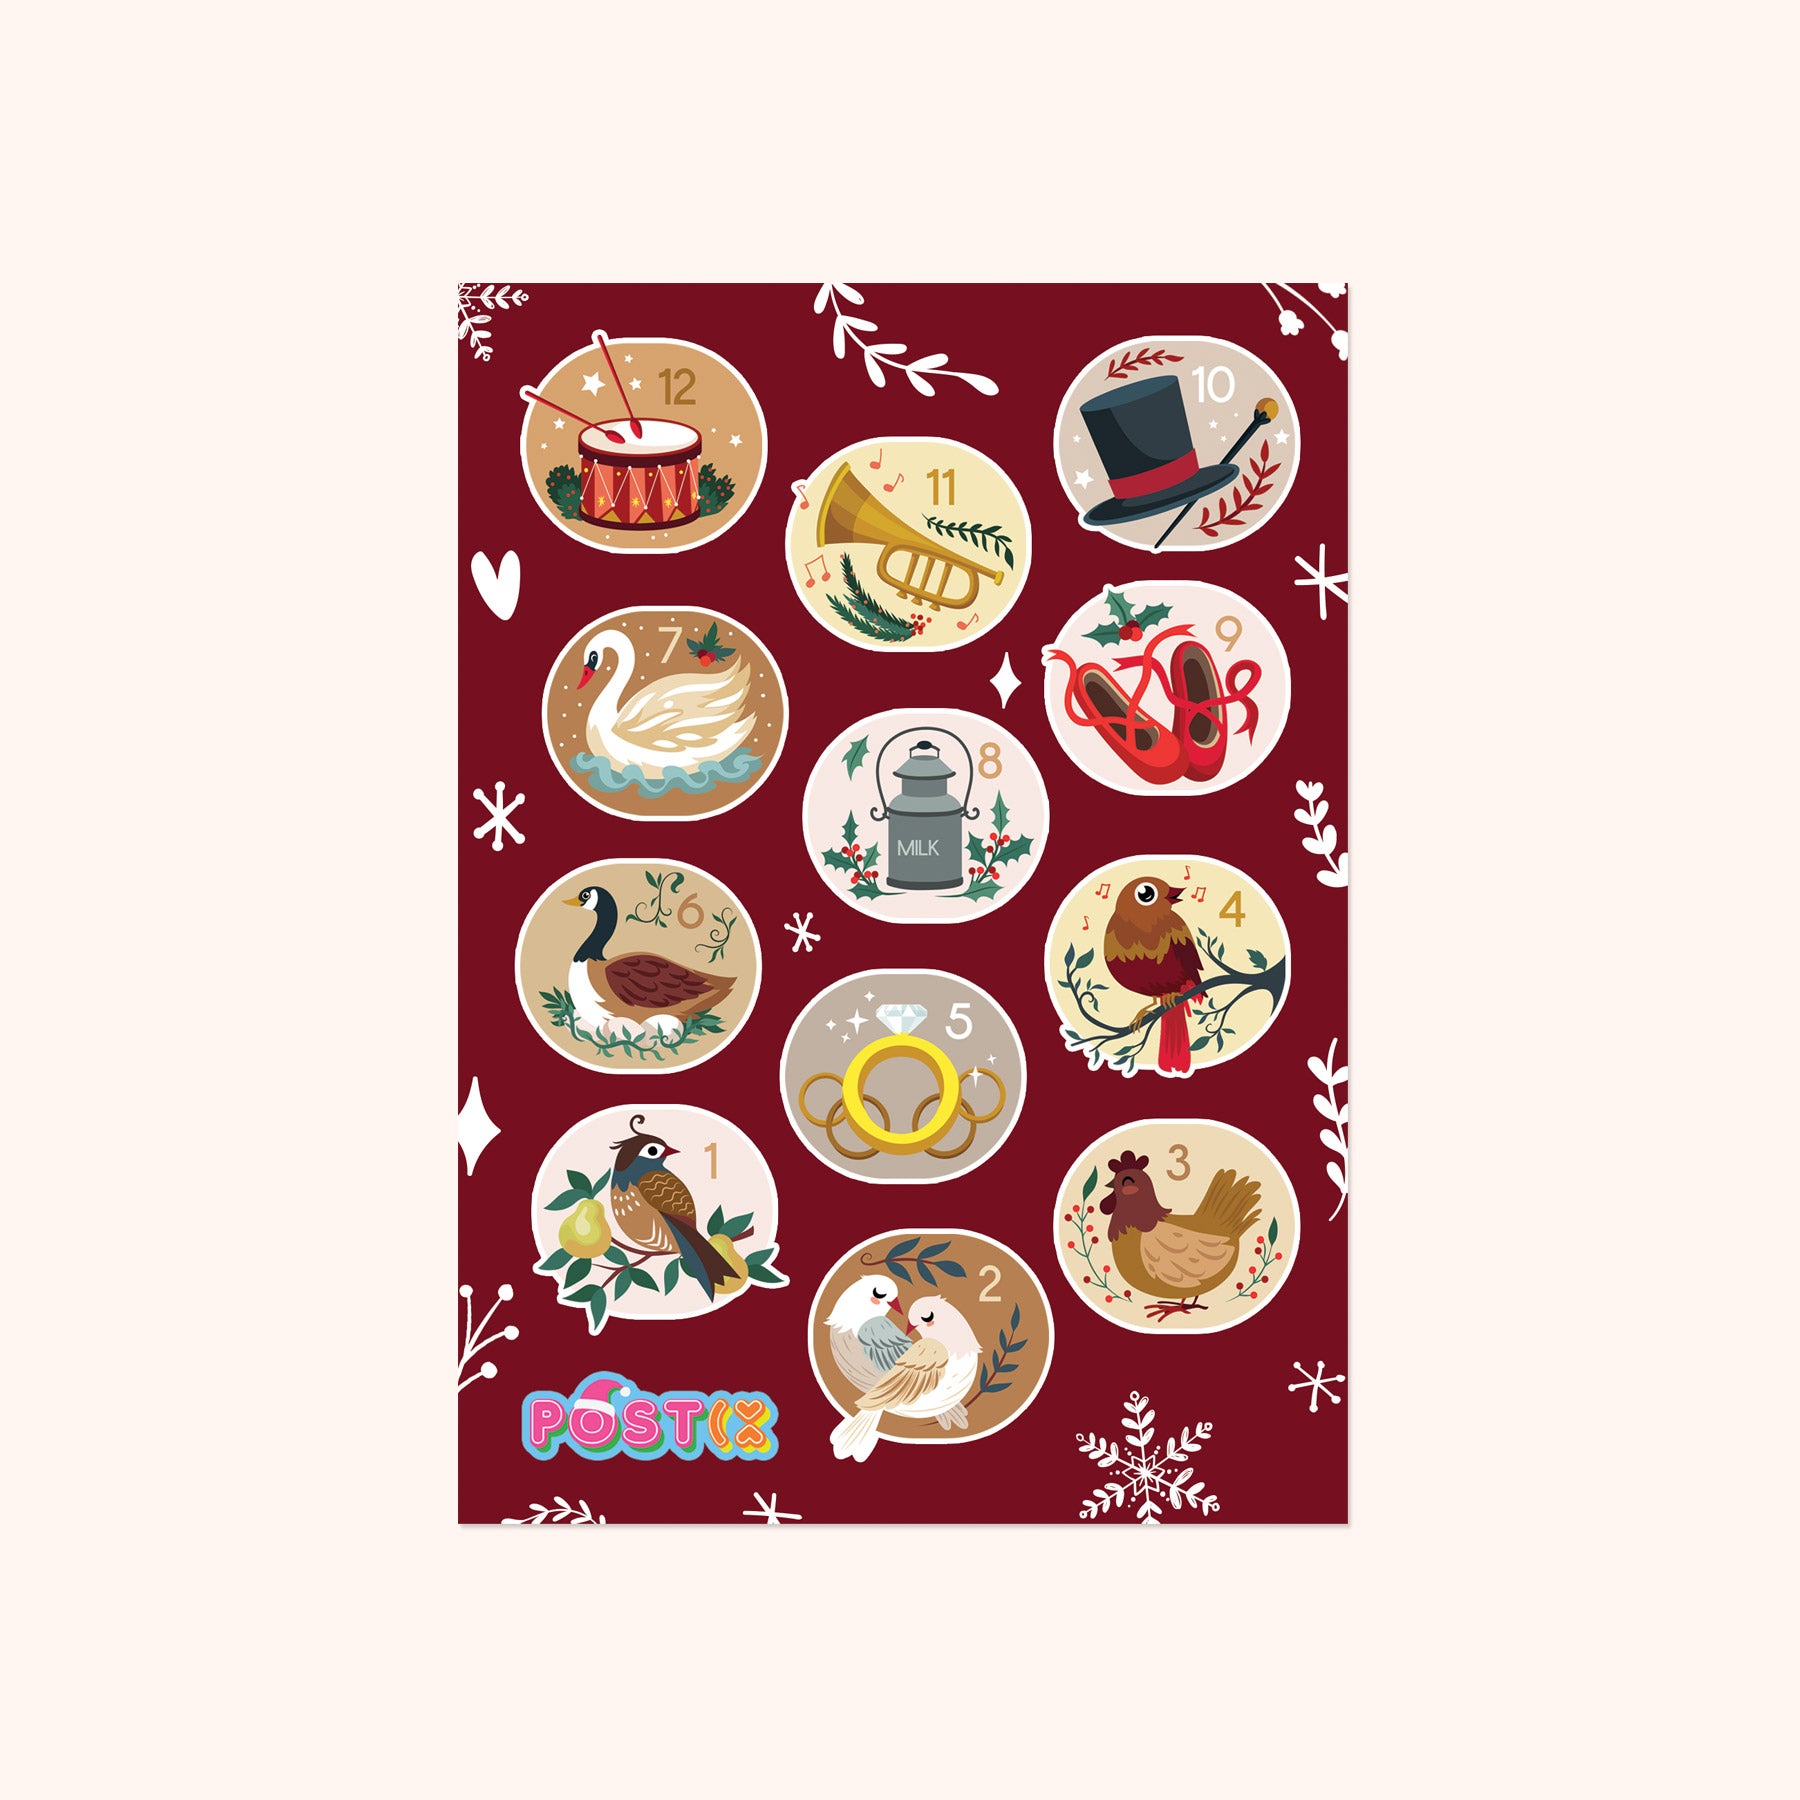 12 Days of Christmas A6 Sticker Sheet